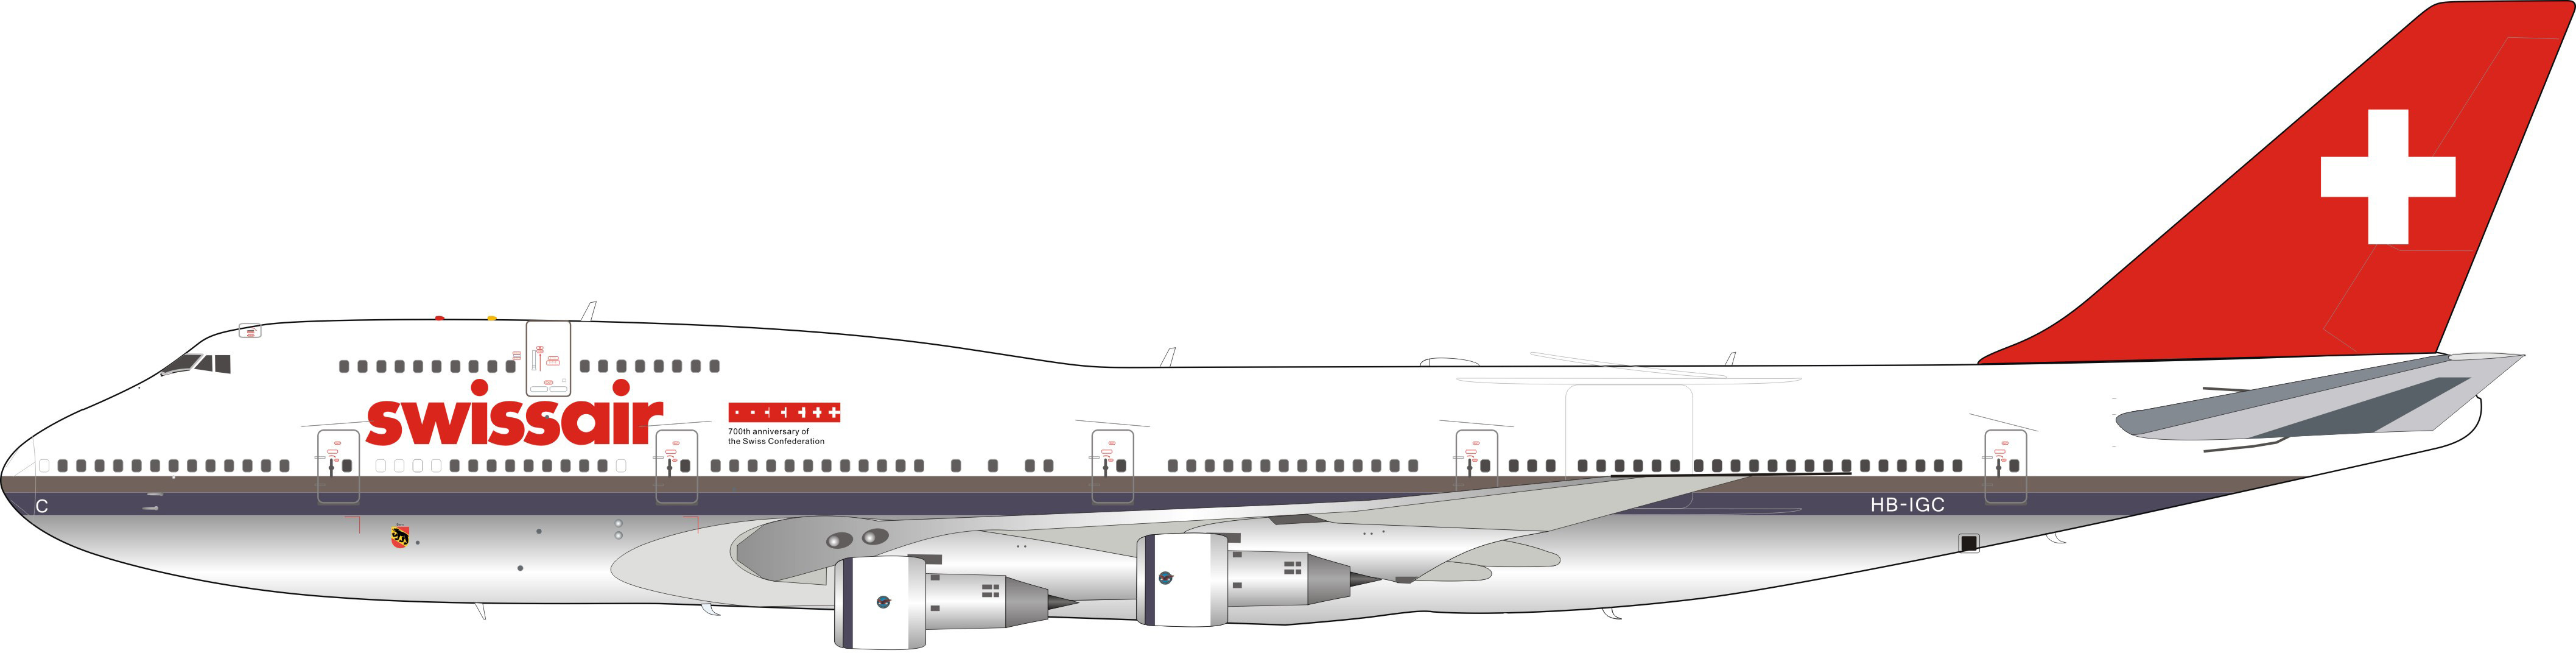 1:200 Swissair Boeing 747-300 HB-IGC (B-743-IGC-P)